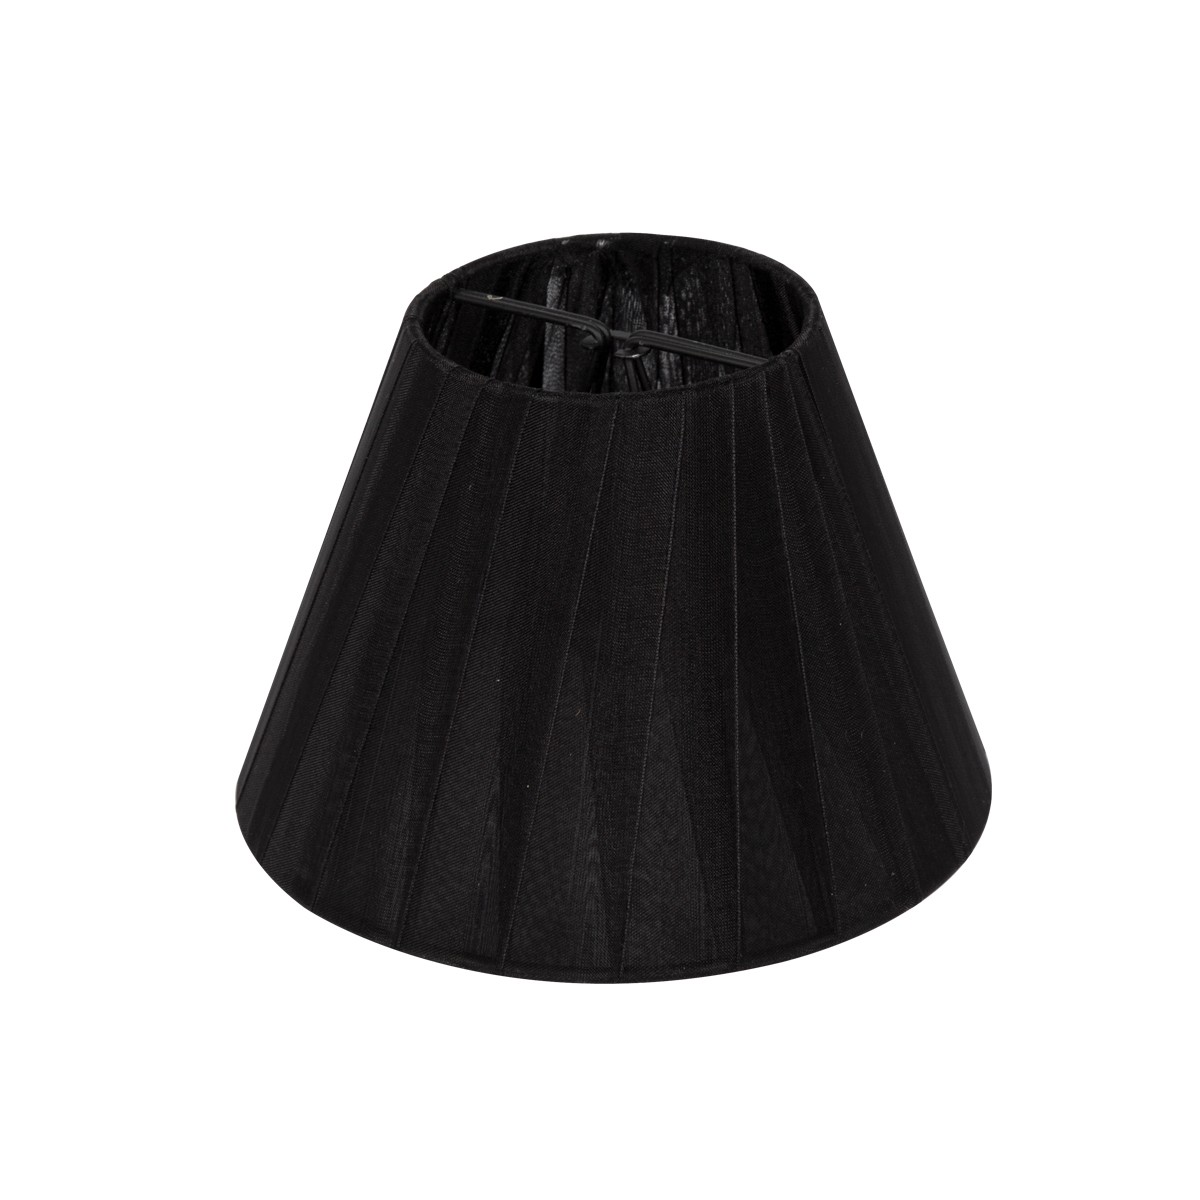 Καπέλο μονόχρωμη οργάντζα με έλασμα στρογγυλό μίνι Φ11cm μαύρο VK/ORG/S/8/B